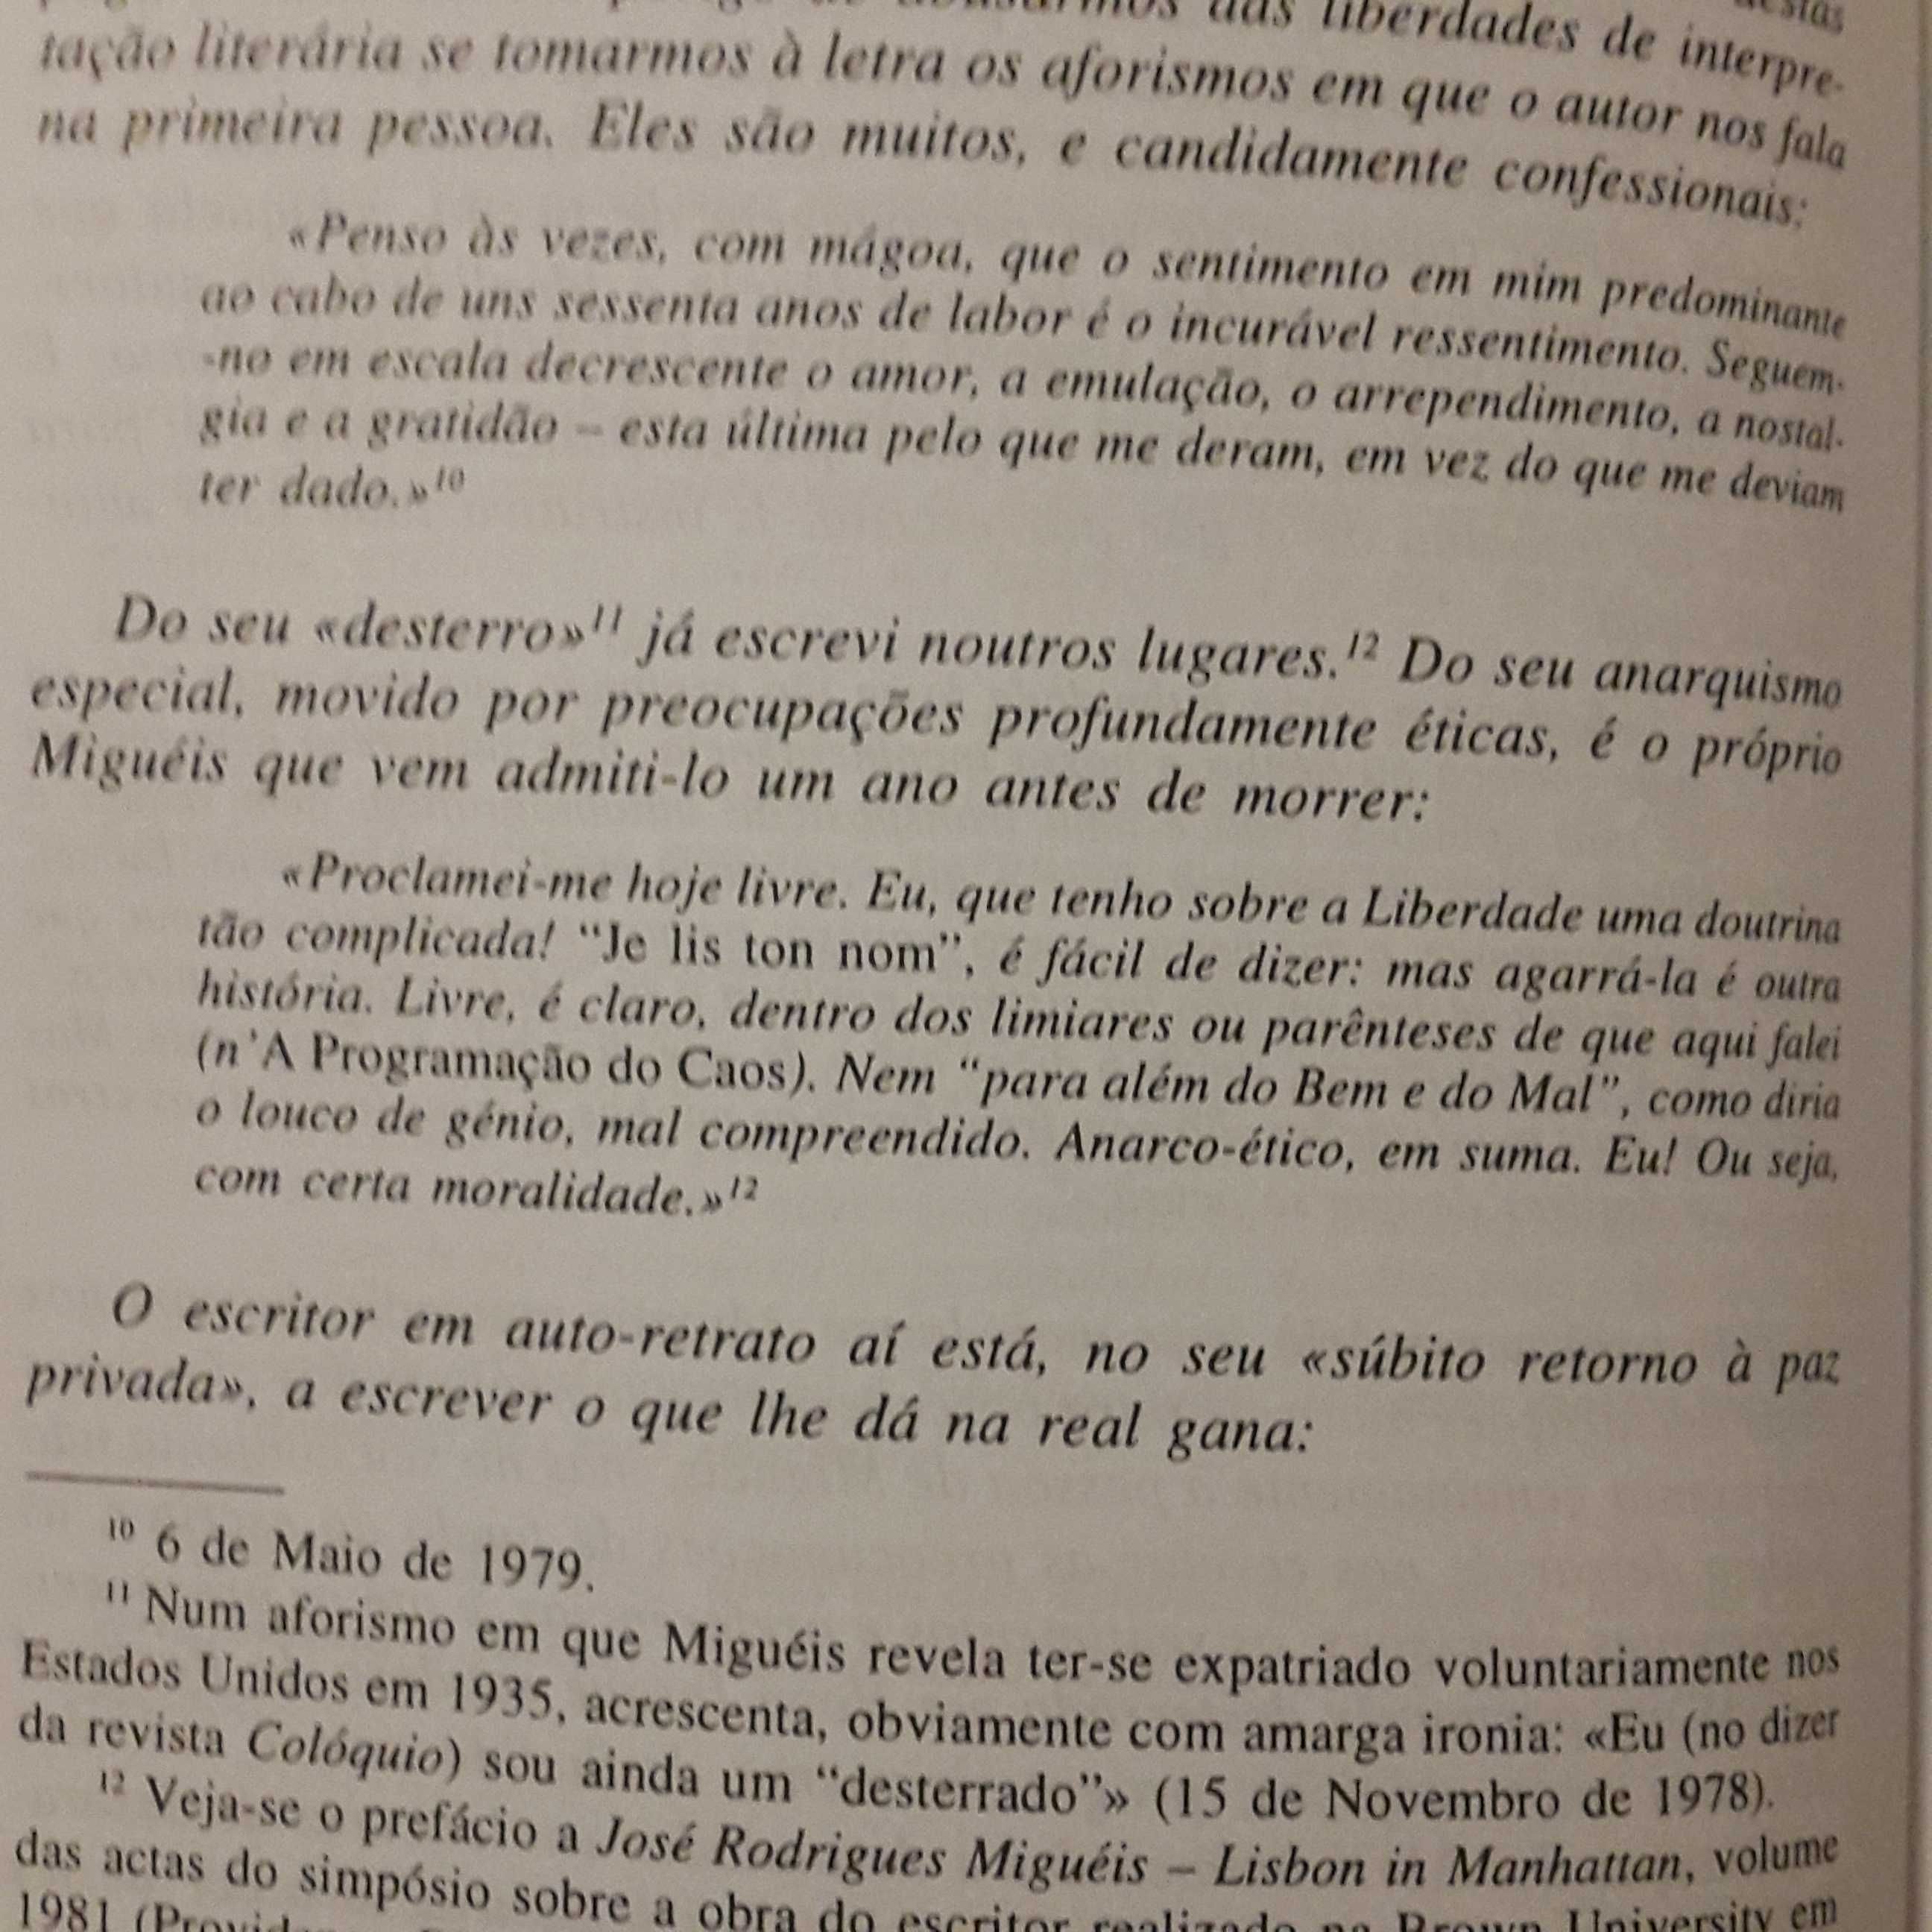 José Rodrigues Miguéis - Aforismos & Desaforismos de Aparício